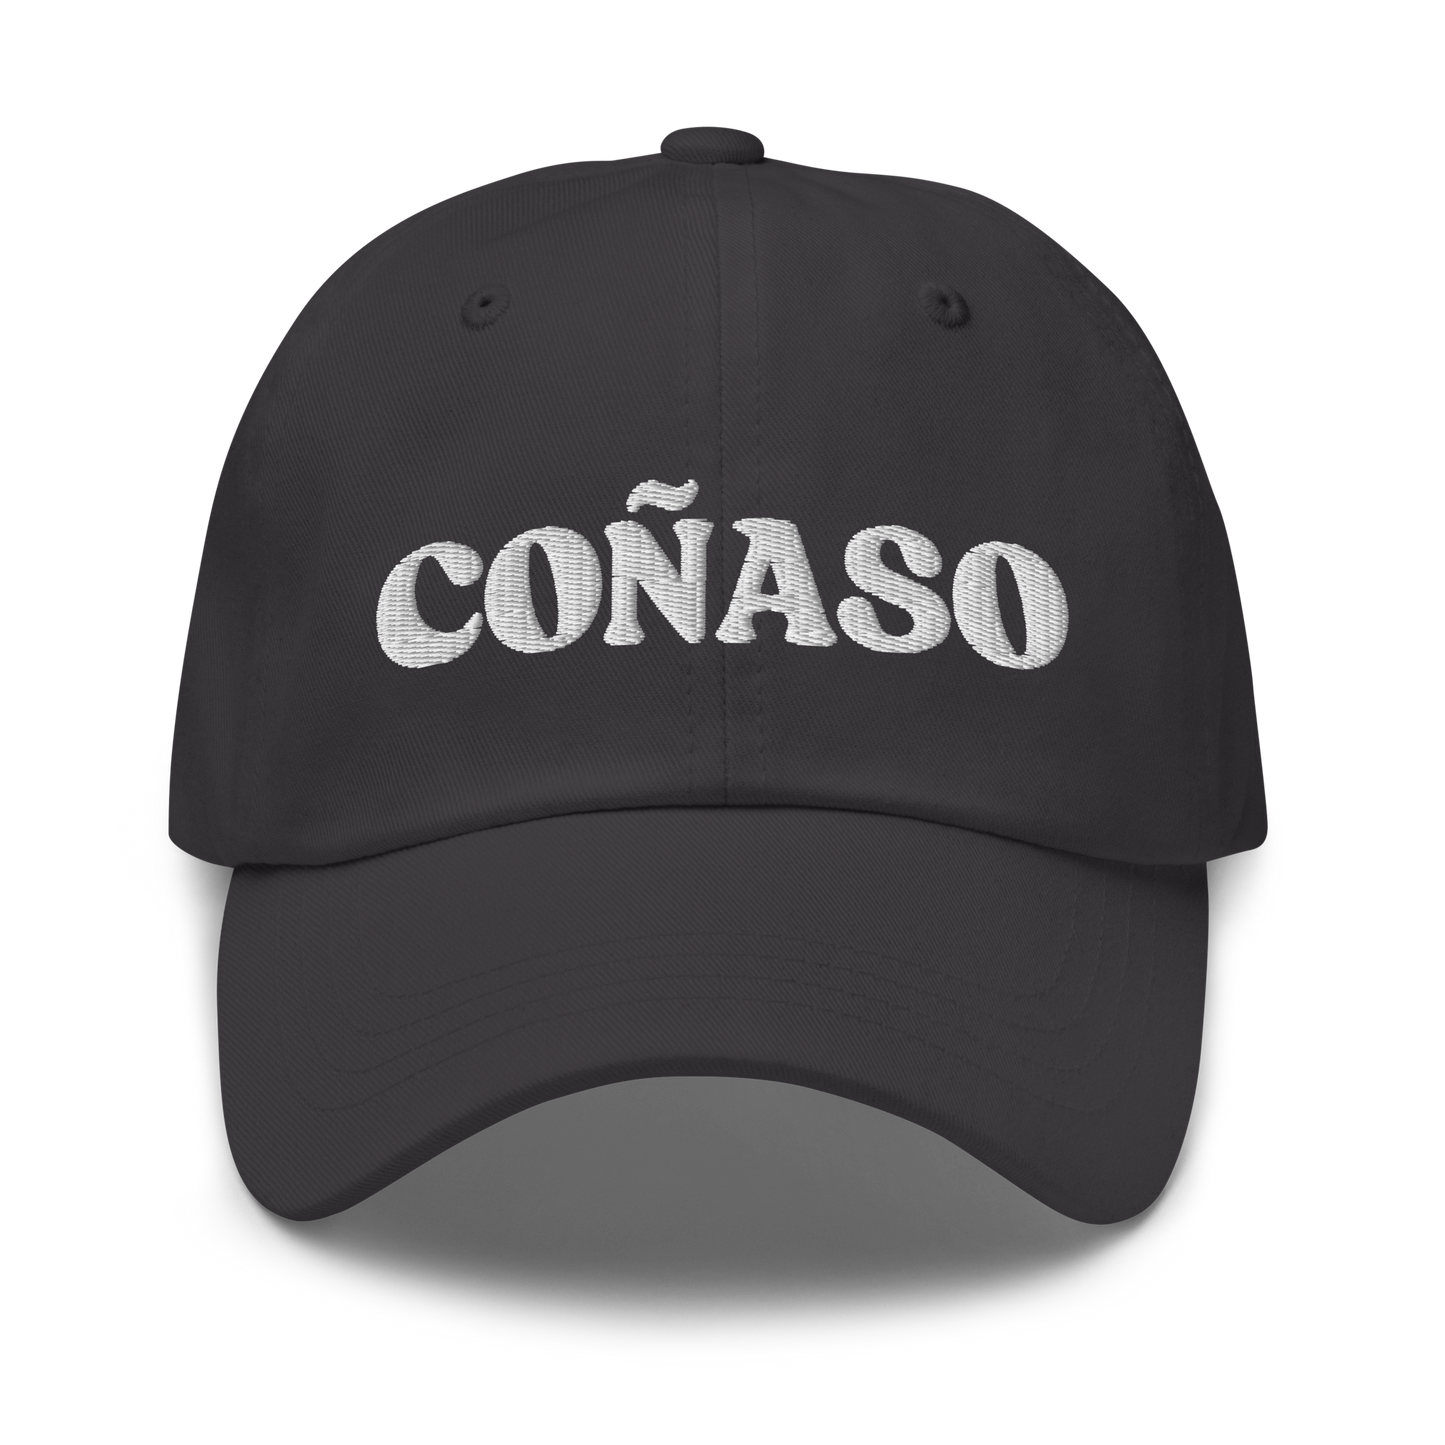 Coñaso Dominican Dad hat